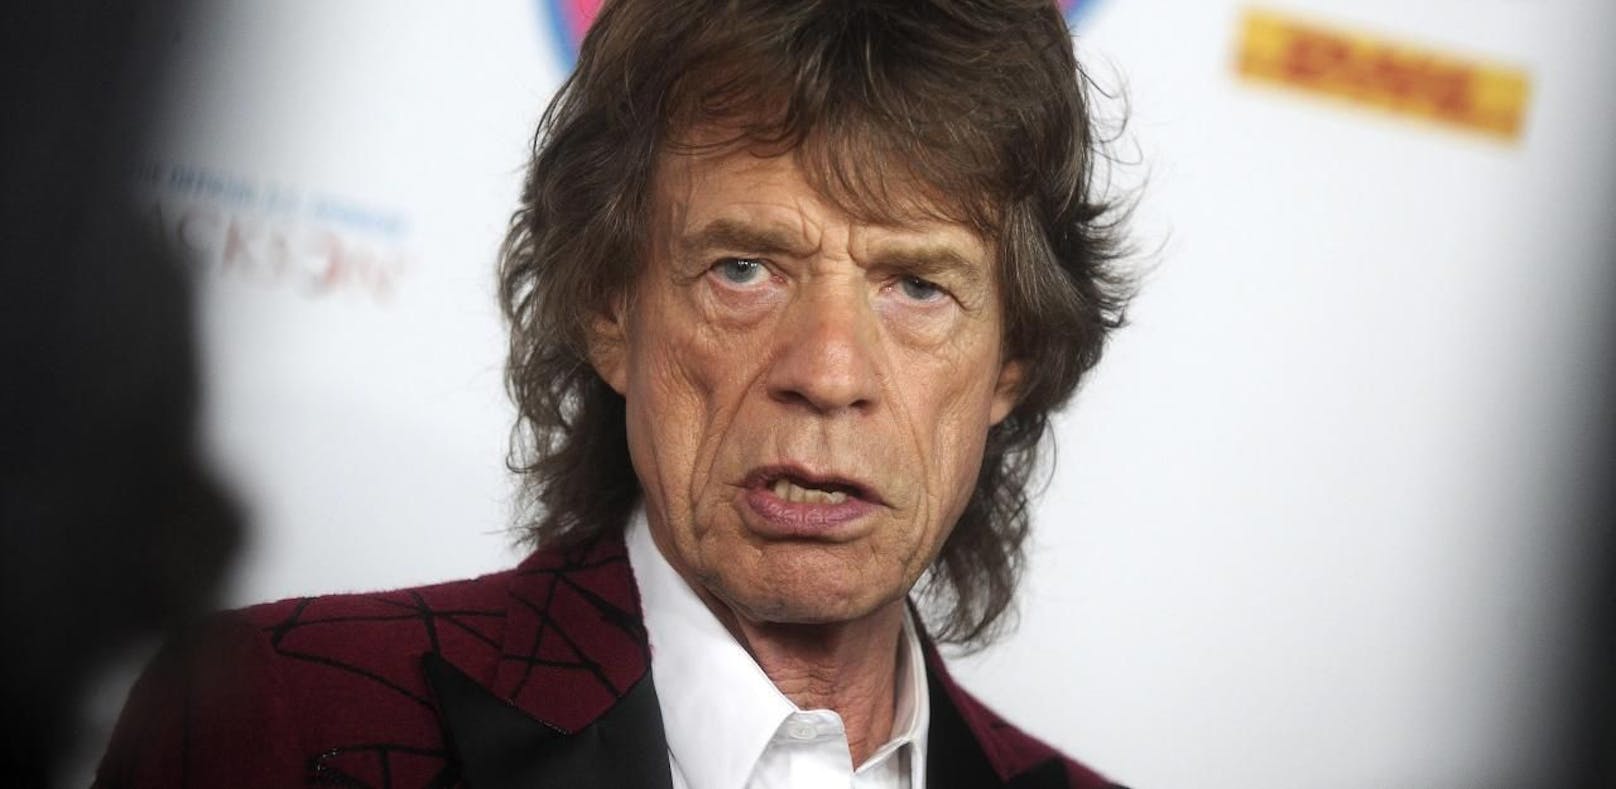 Mick Jagger thematisiert auf neuer Single den Brexit